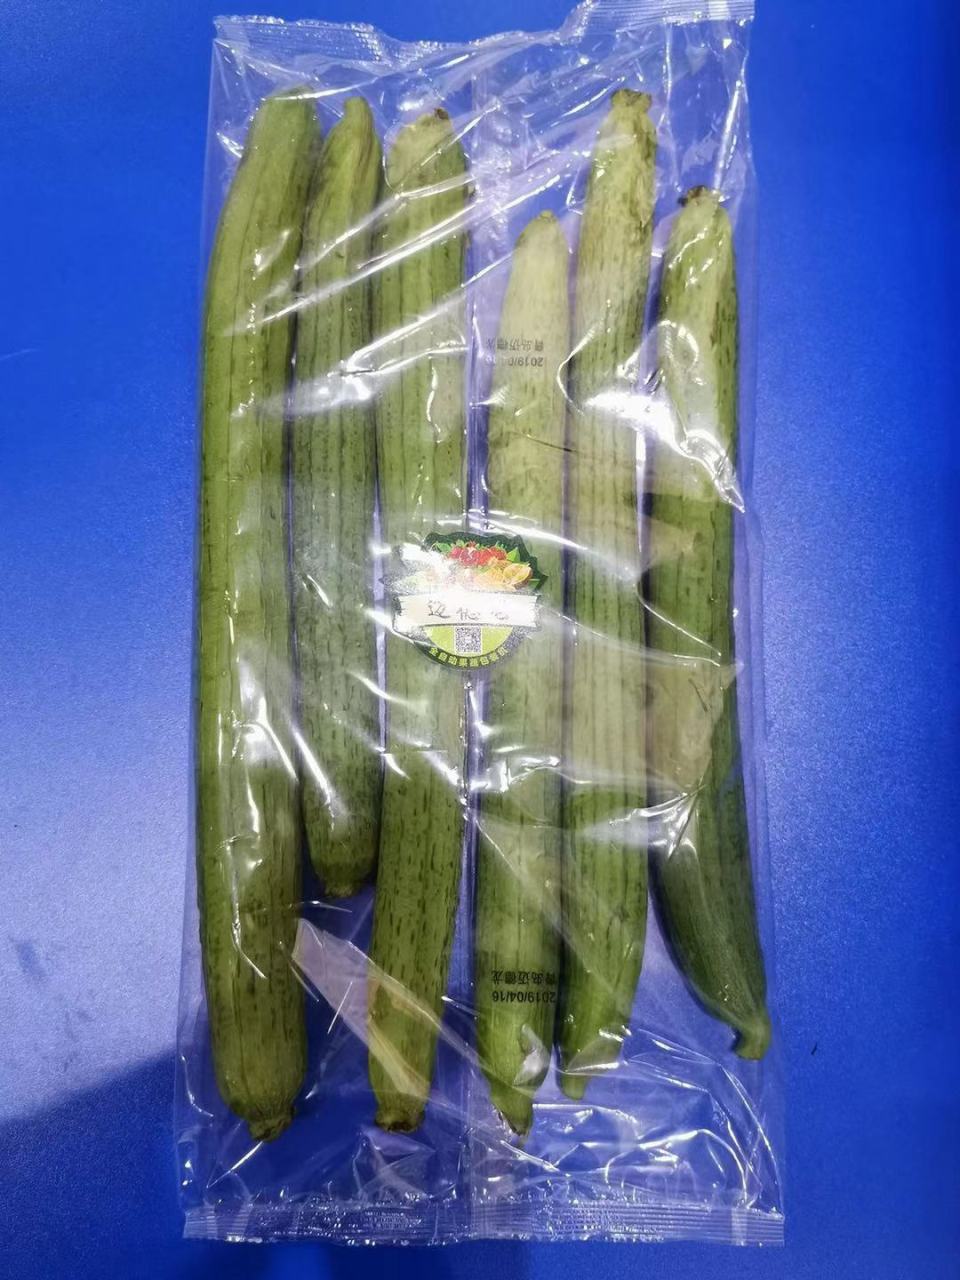 全自动蔬菜包装机 迈德龙蔬菜打包机 果蔬枕式包装机